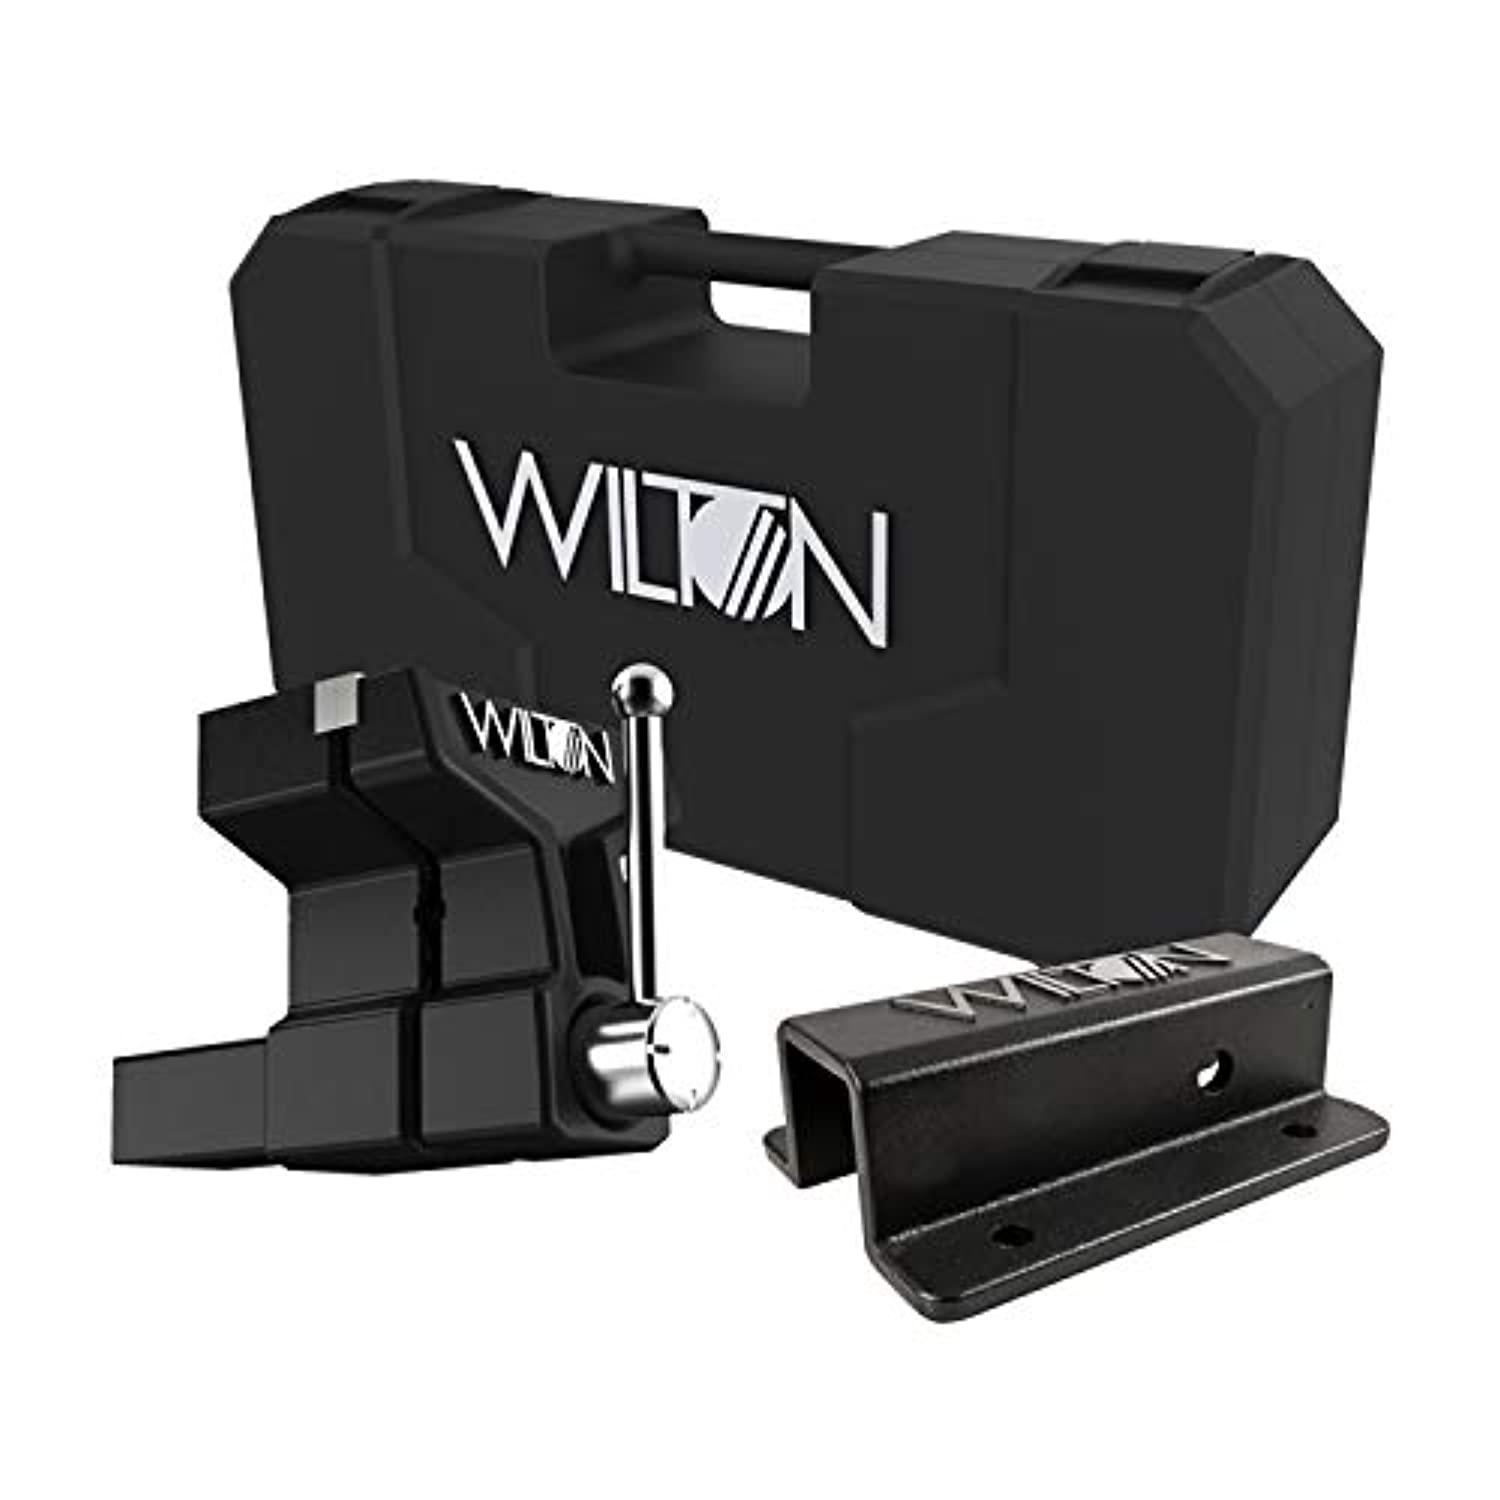 Wilton Tools wilton 6" atv all-terrain vise with case (10015)